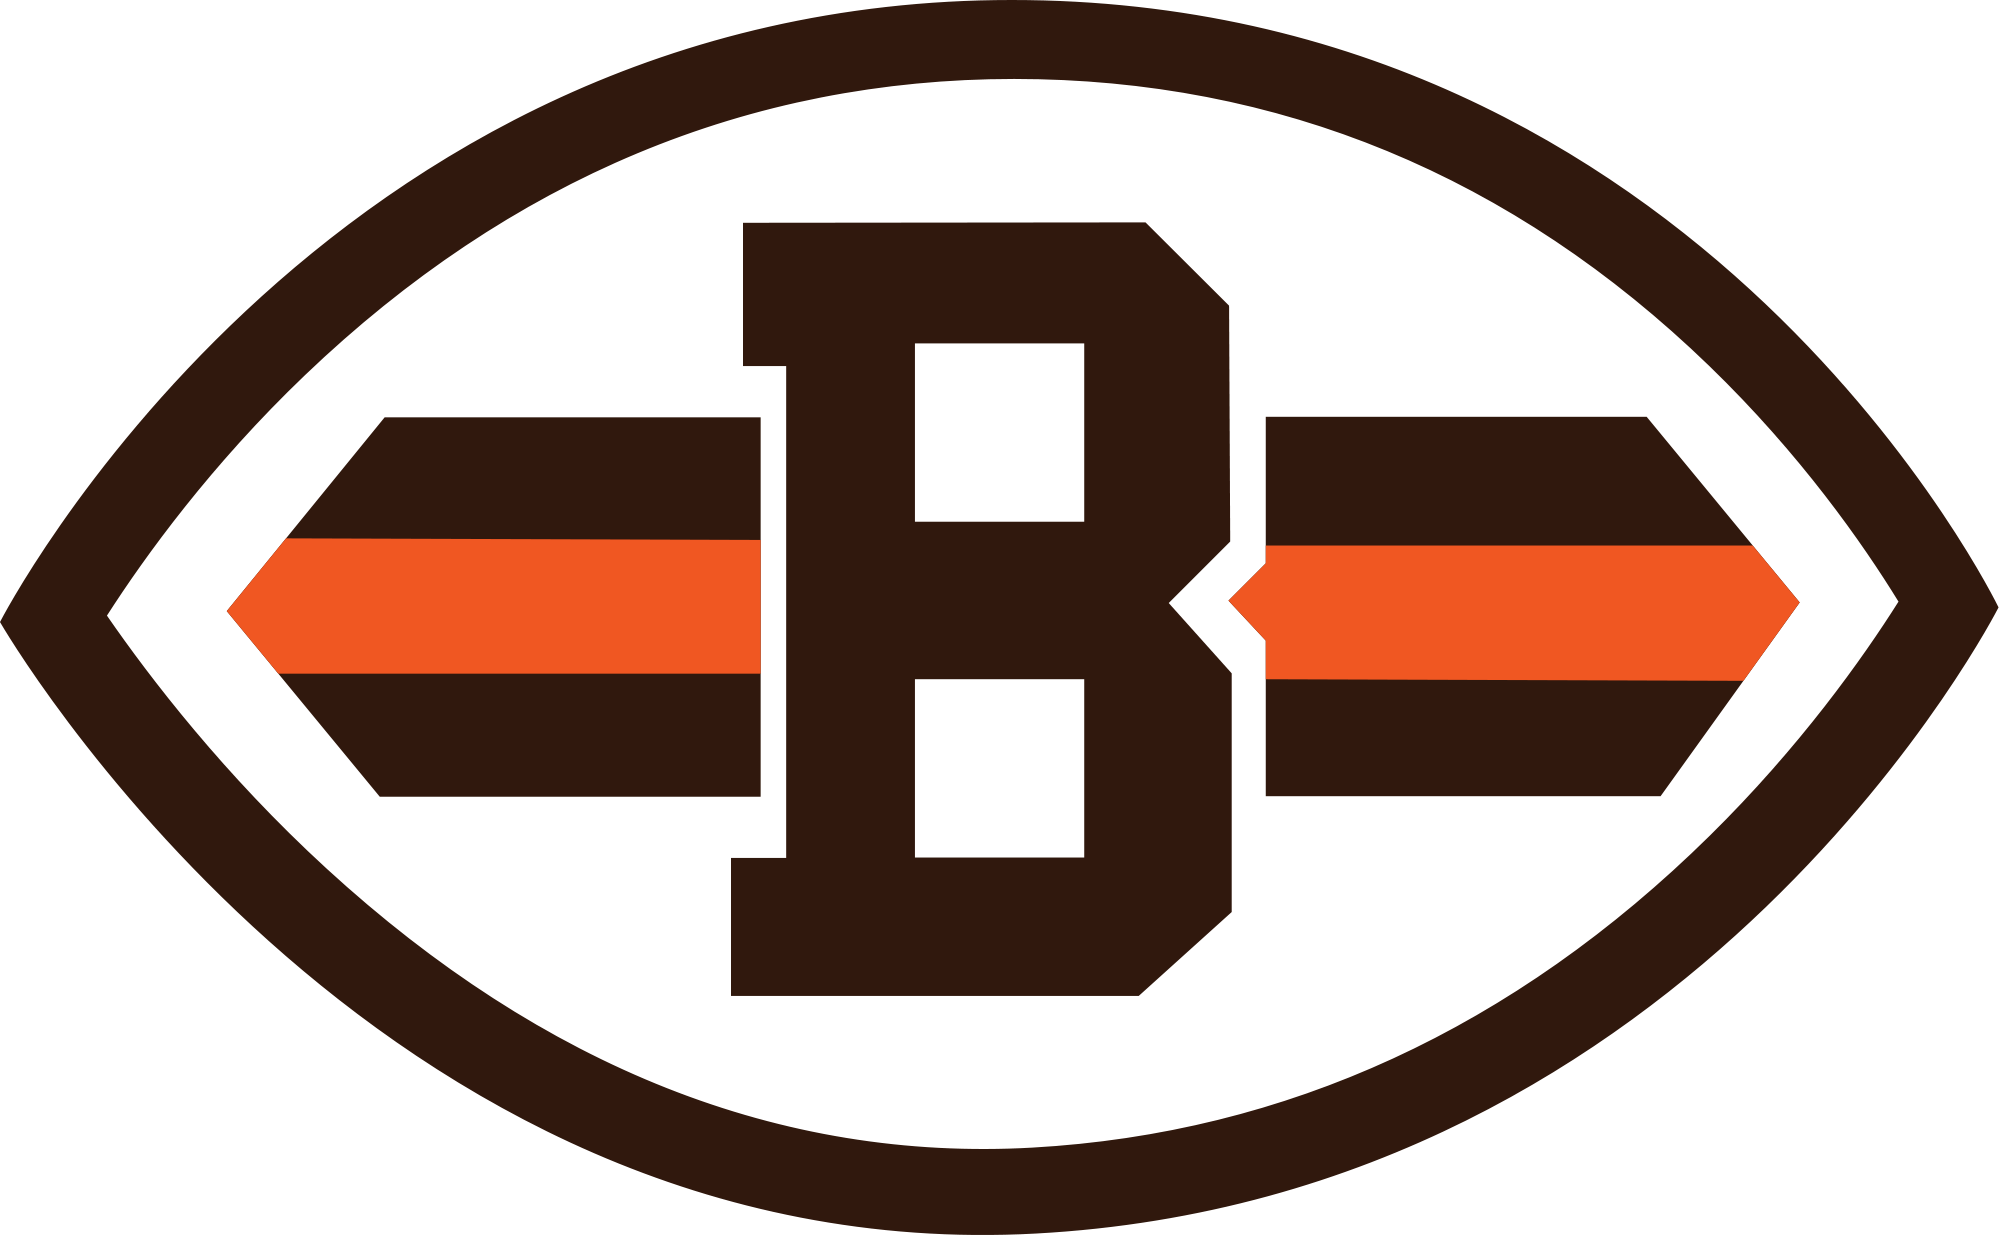 Cleveland Browns Transparent Image